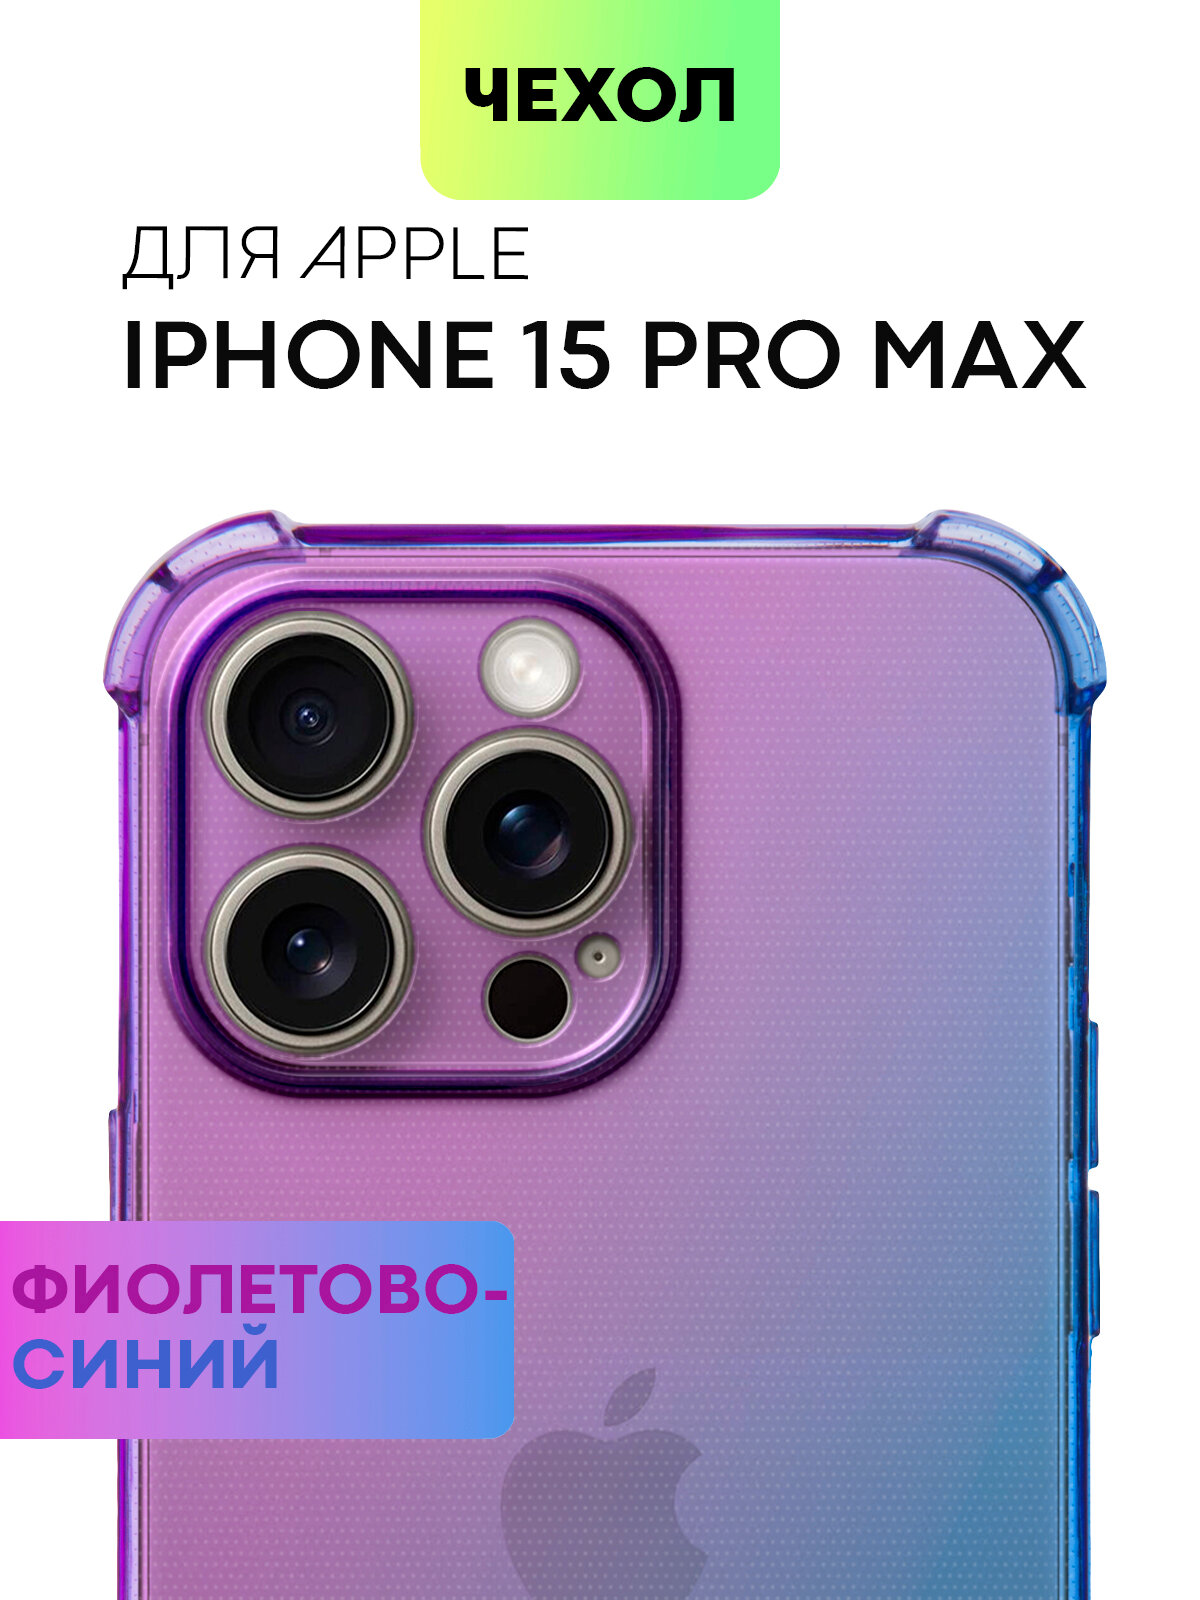 Противоударный чехол для Apple iPhone 15 Pro Max (Айфон 15 Про Макс) силиконовый чехол, усиленный, защита камер, BROSCORP прозрачный фиолетовый, синий